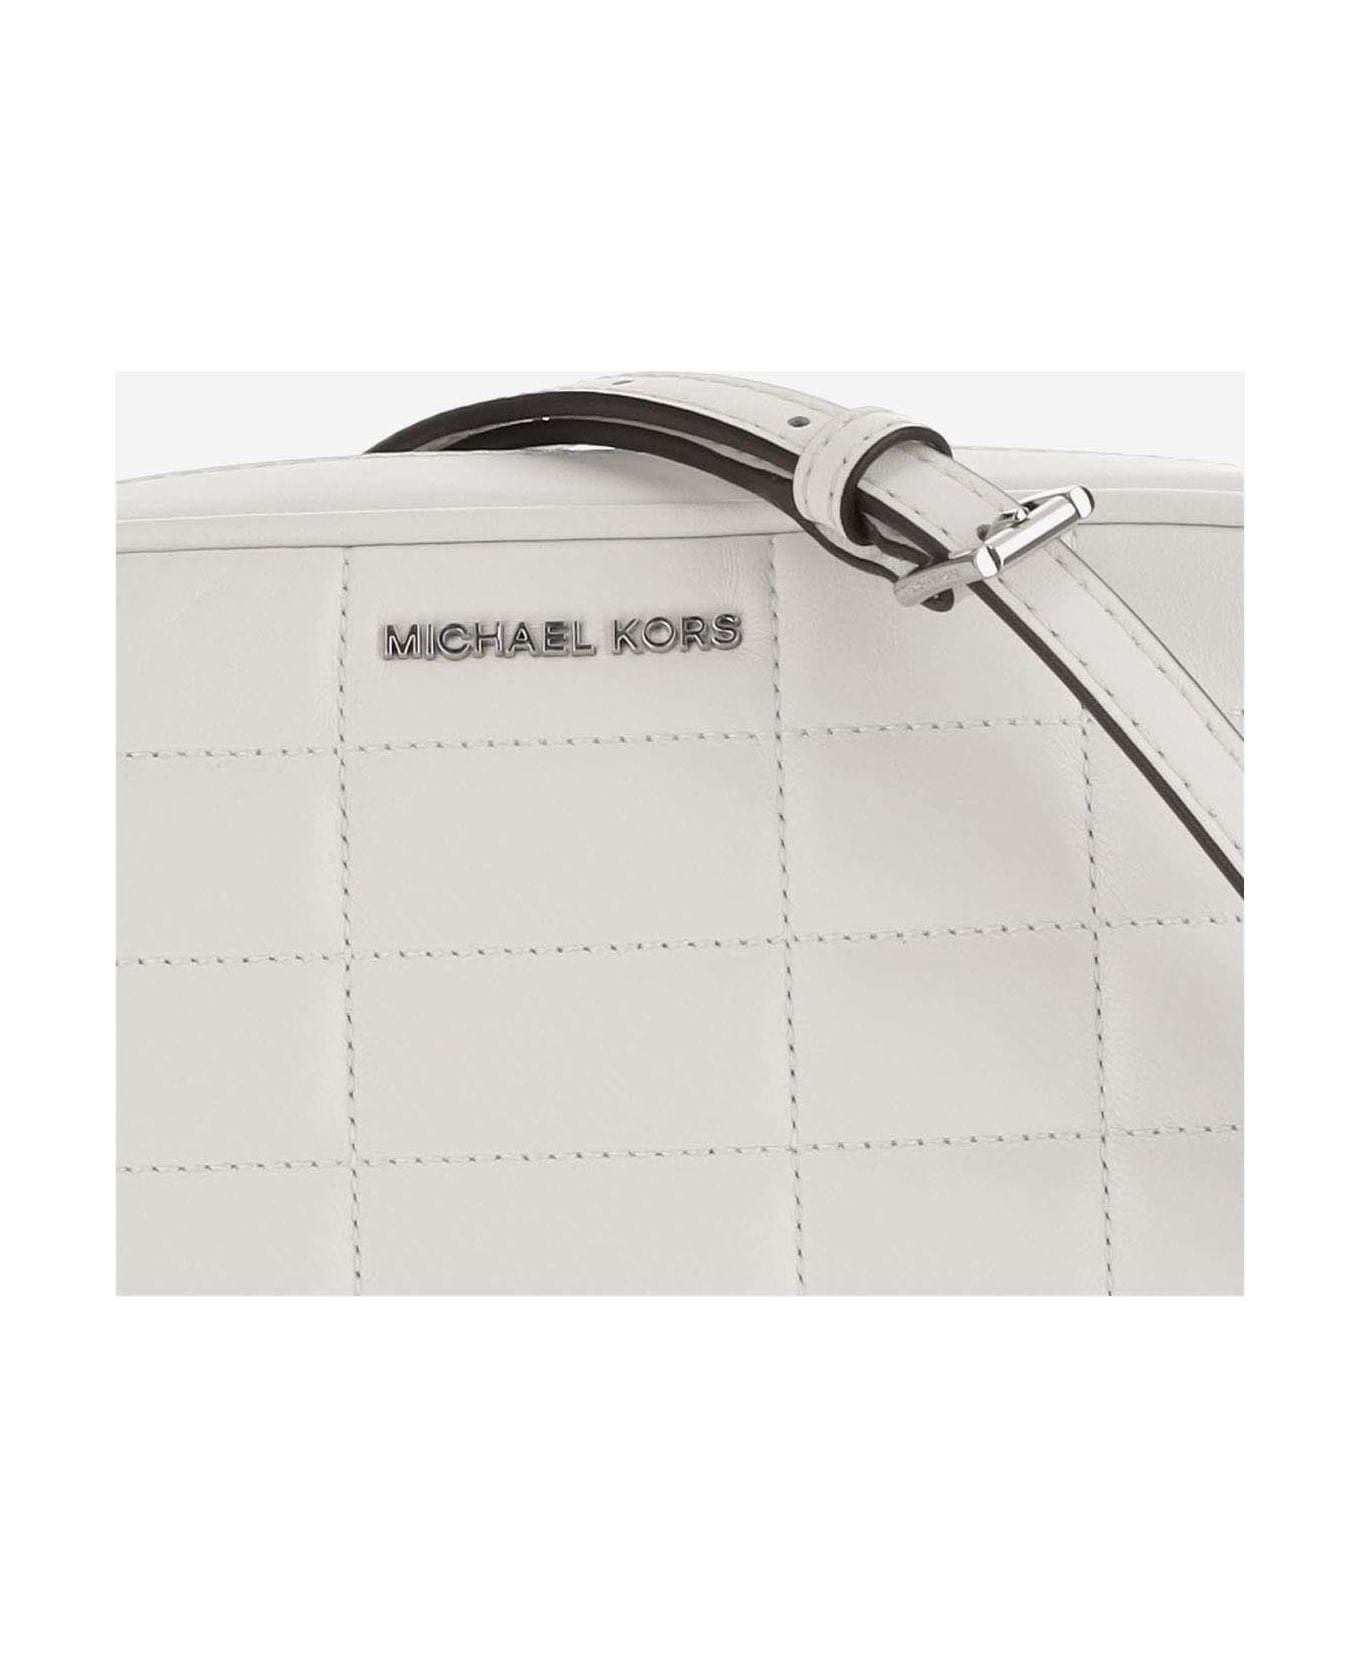 Michael Kors Camera Bag Jet Set - White